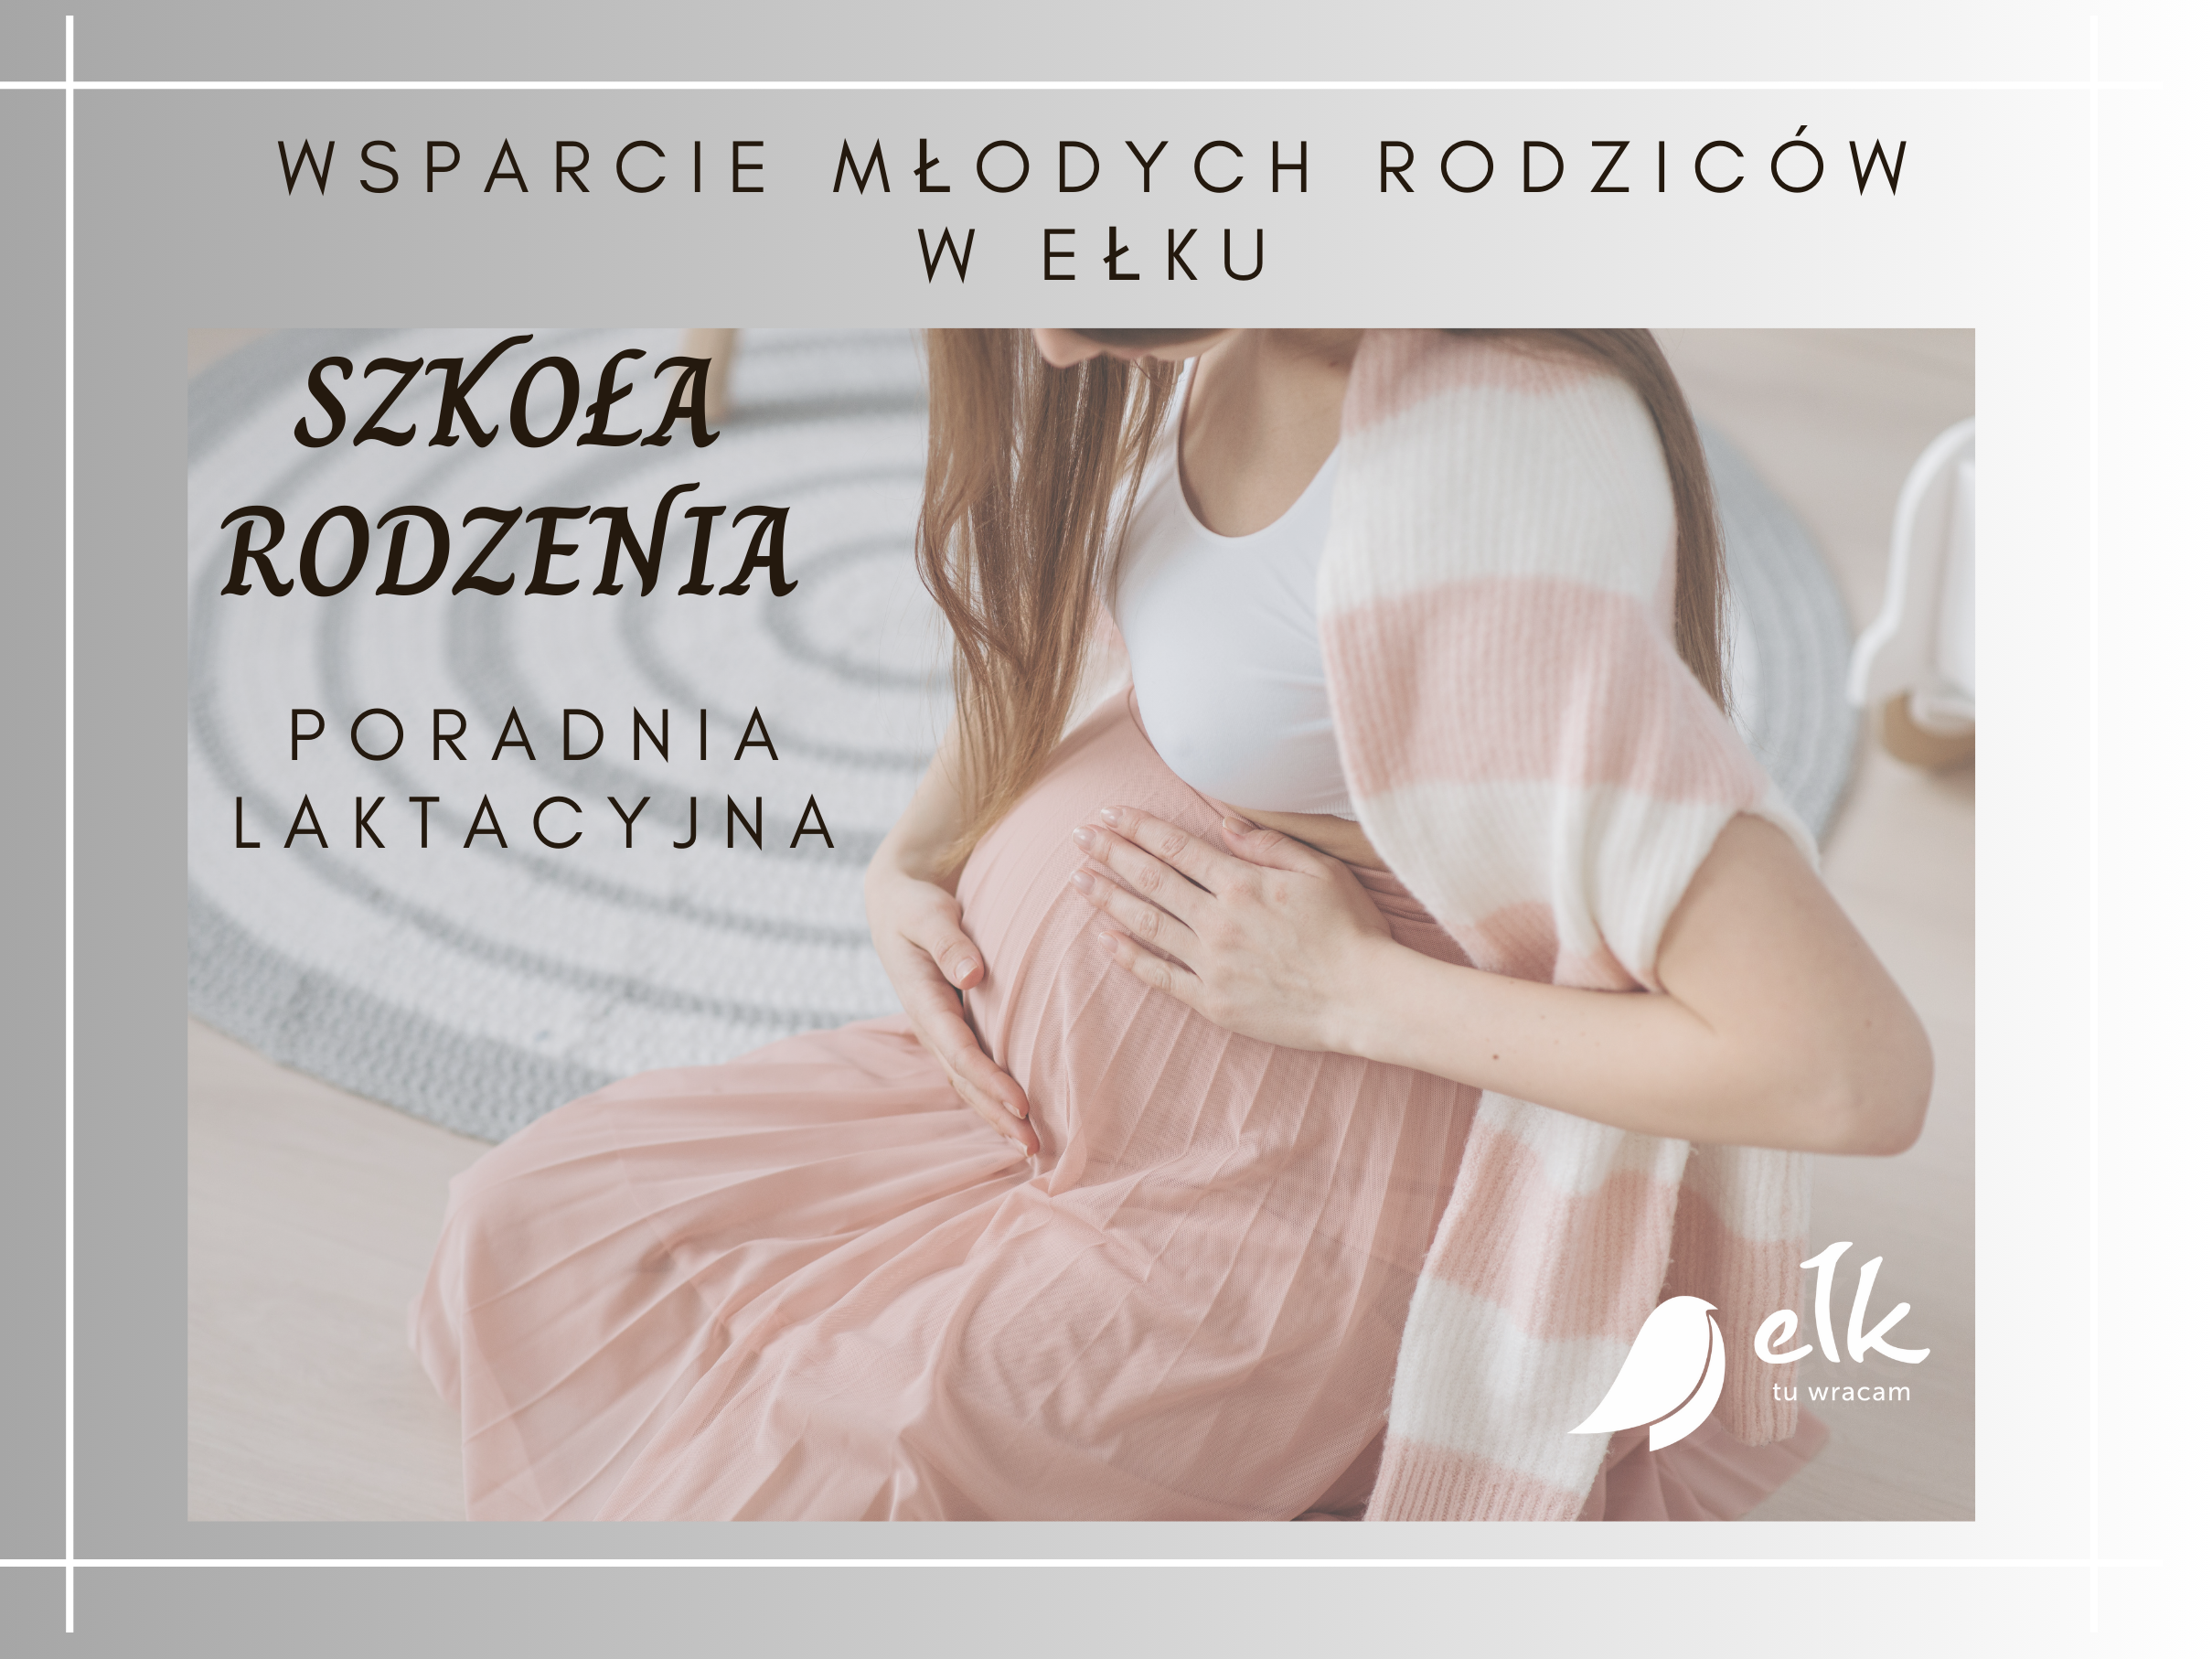 Un altro anno in cui il governo locale di Ełk sostiene i giovani genitori